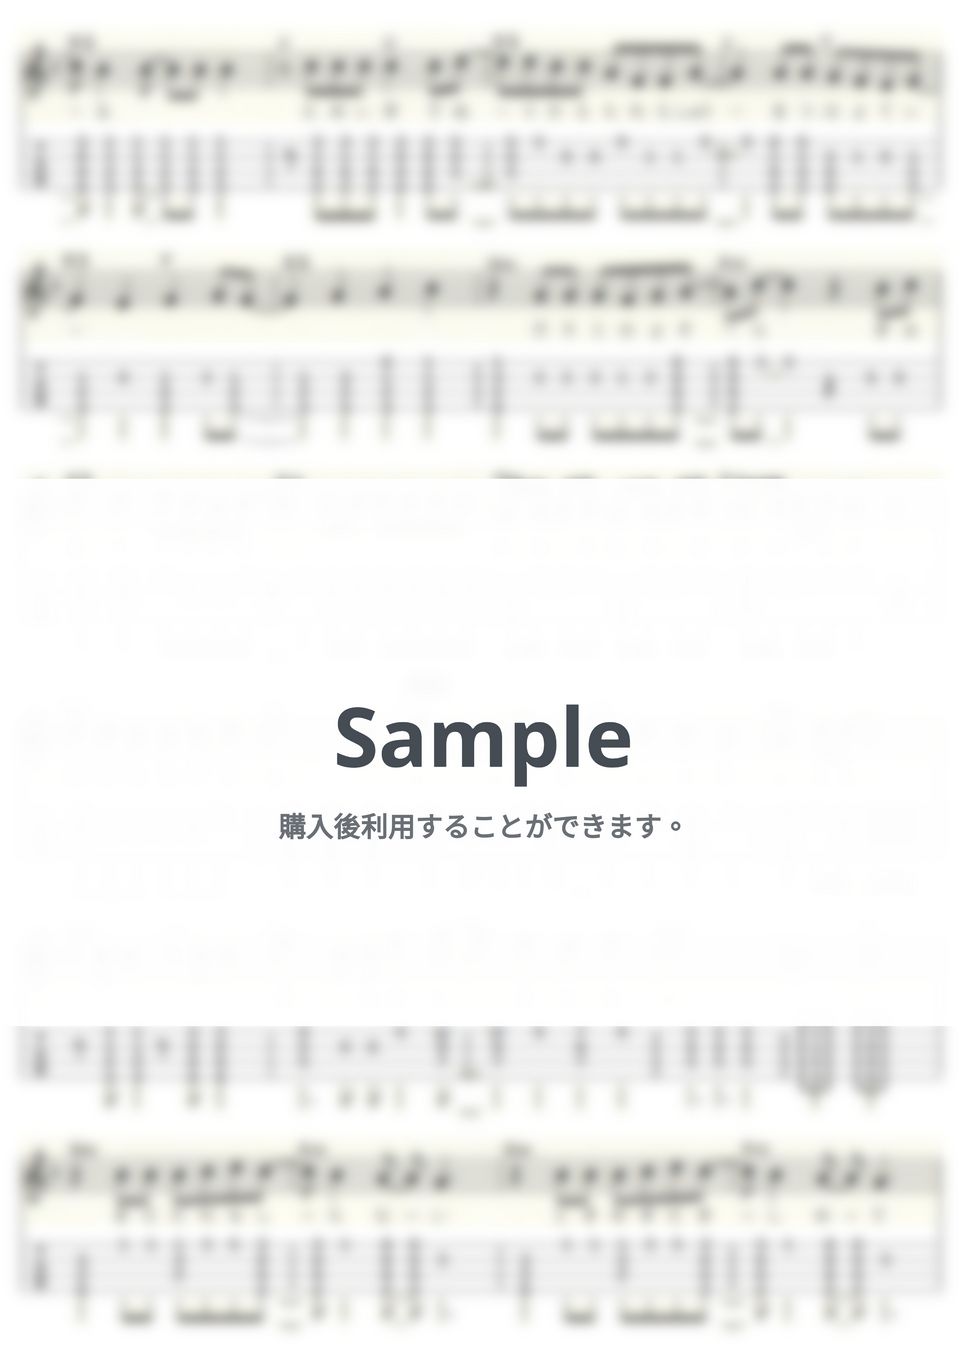 福山雅治 - ＨＥＬＬＯ (ｳｸﾚﾚｿﾛ/Low-G/中級) by ukulelepapa